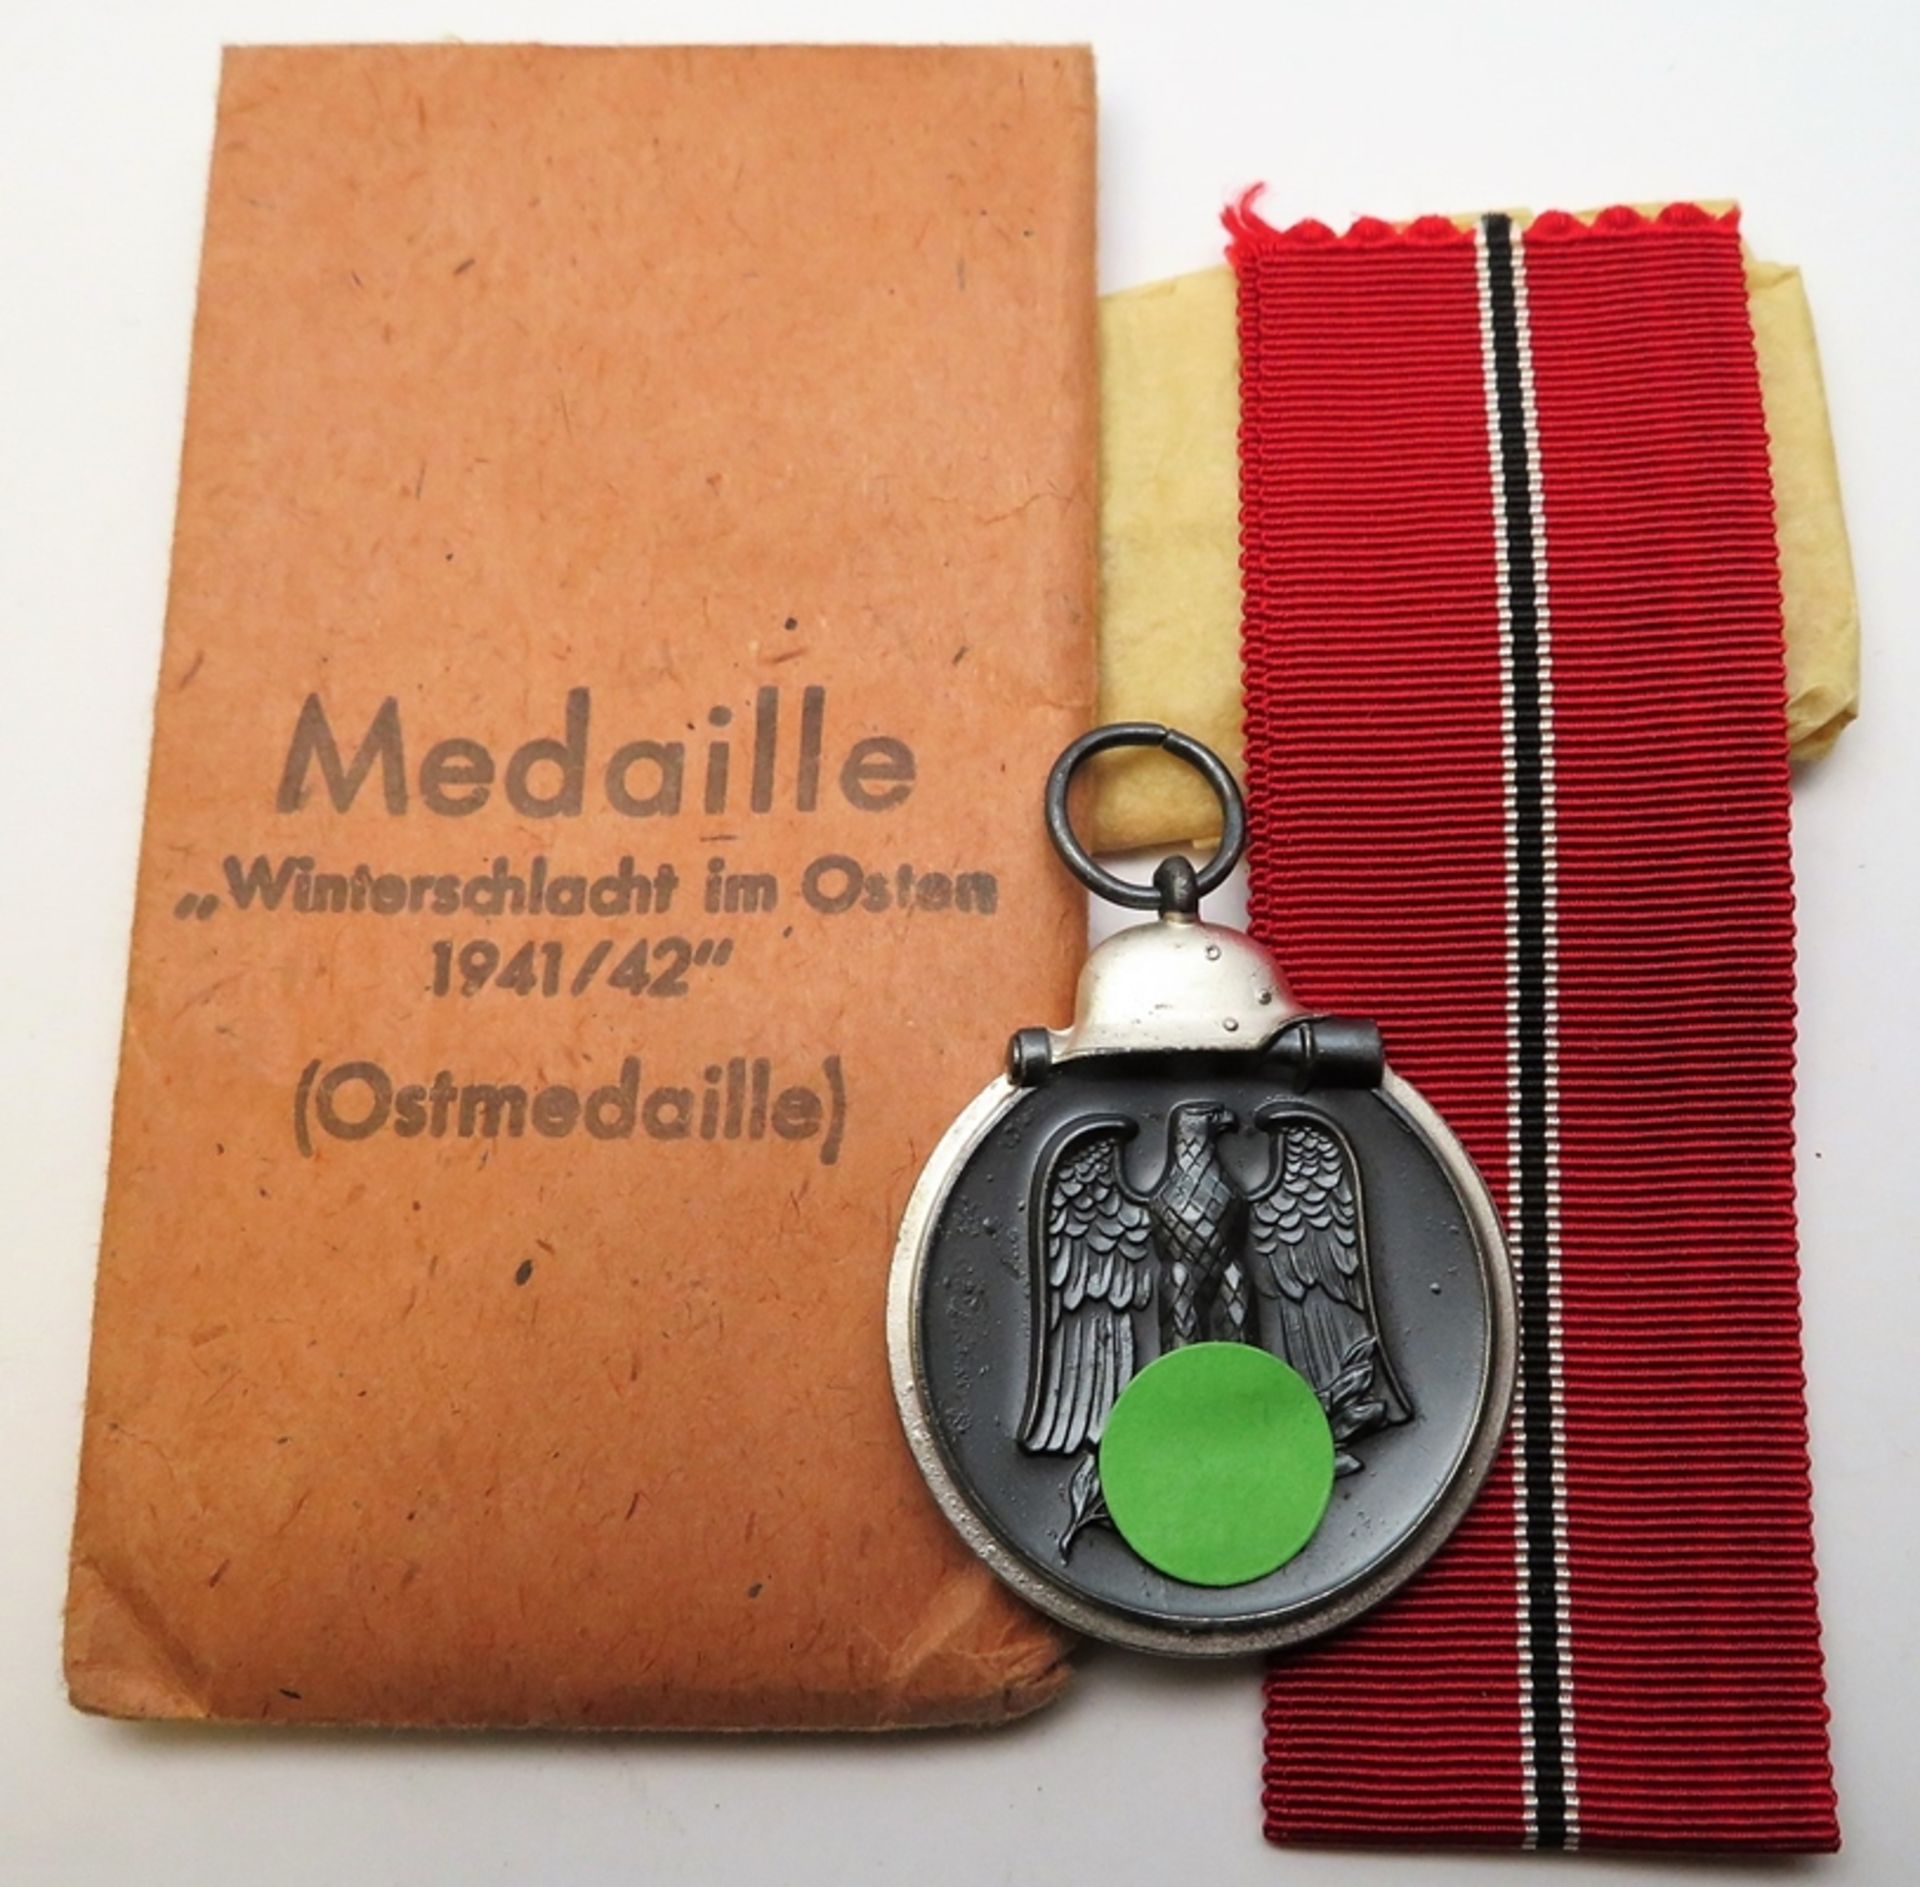 Medaille (Ostmedaille) an Band in Tüte, "Winterschlacht im Osten 1941/42", 2. Weltkrieg, Ordensband